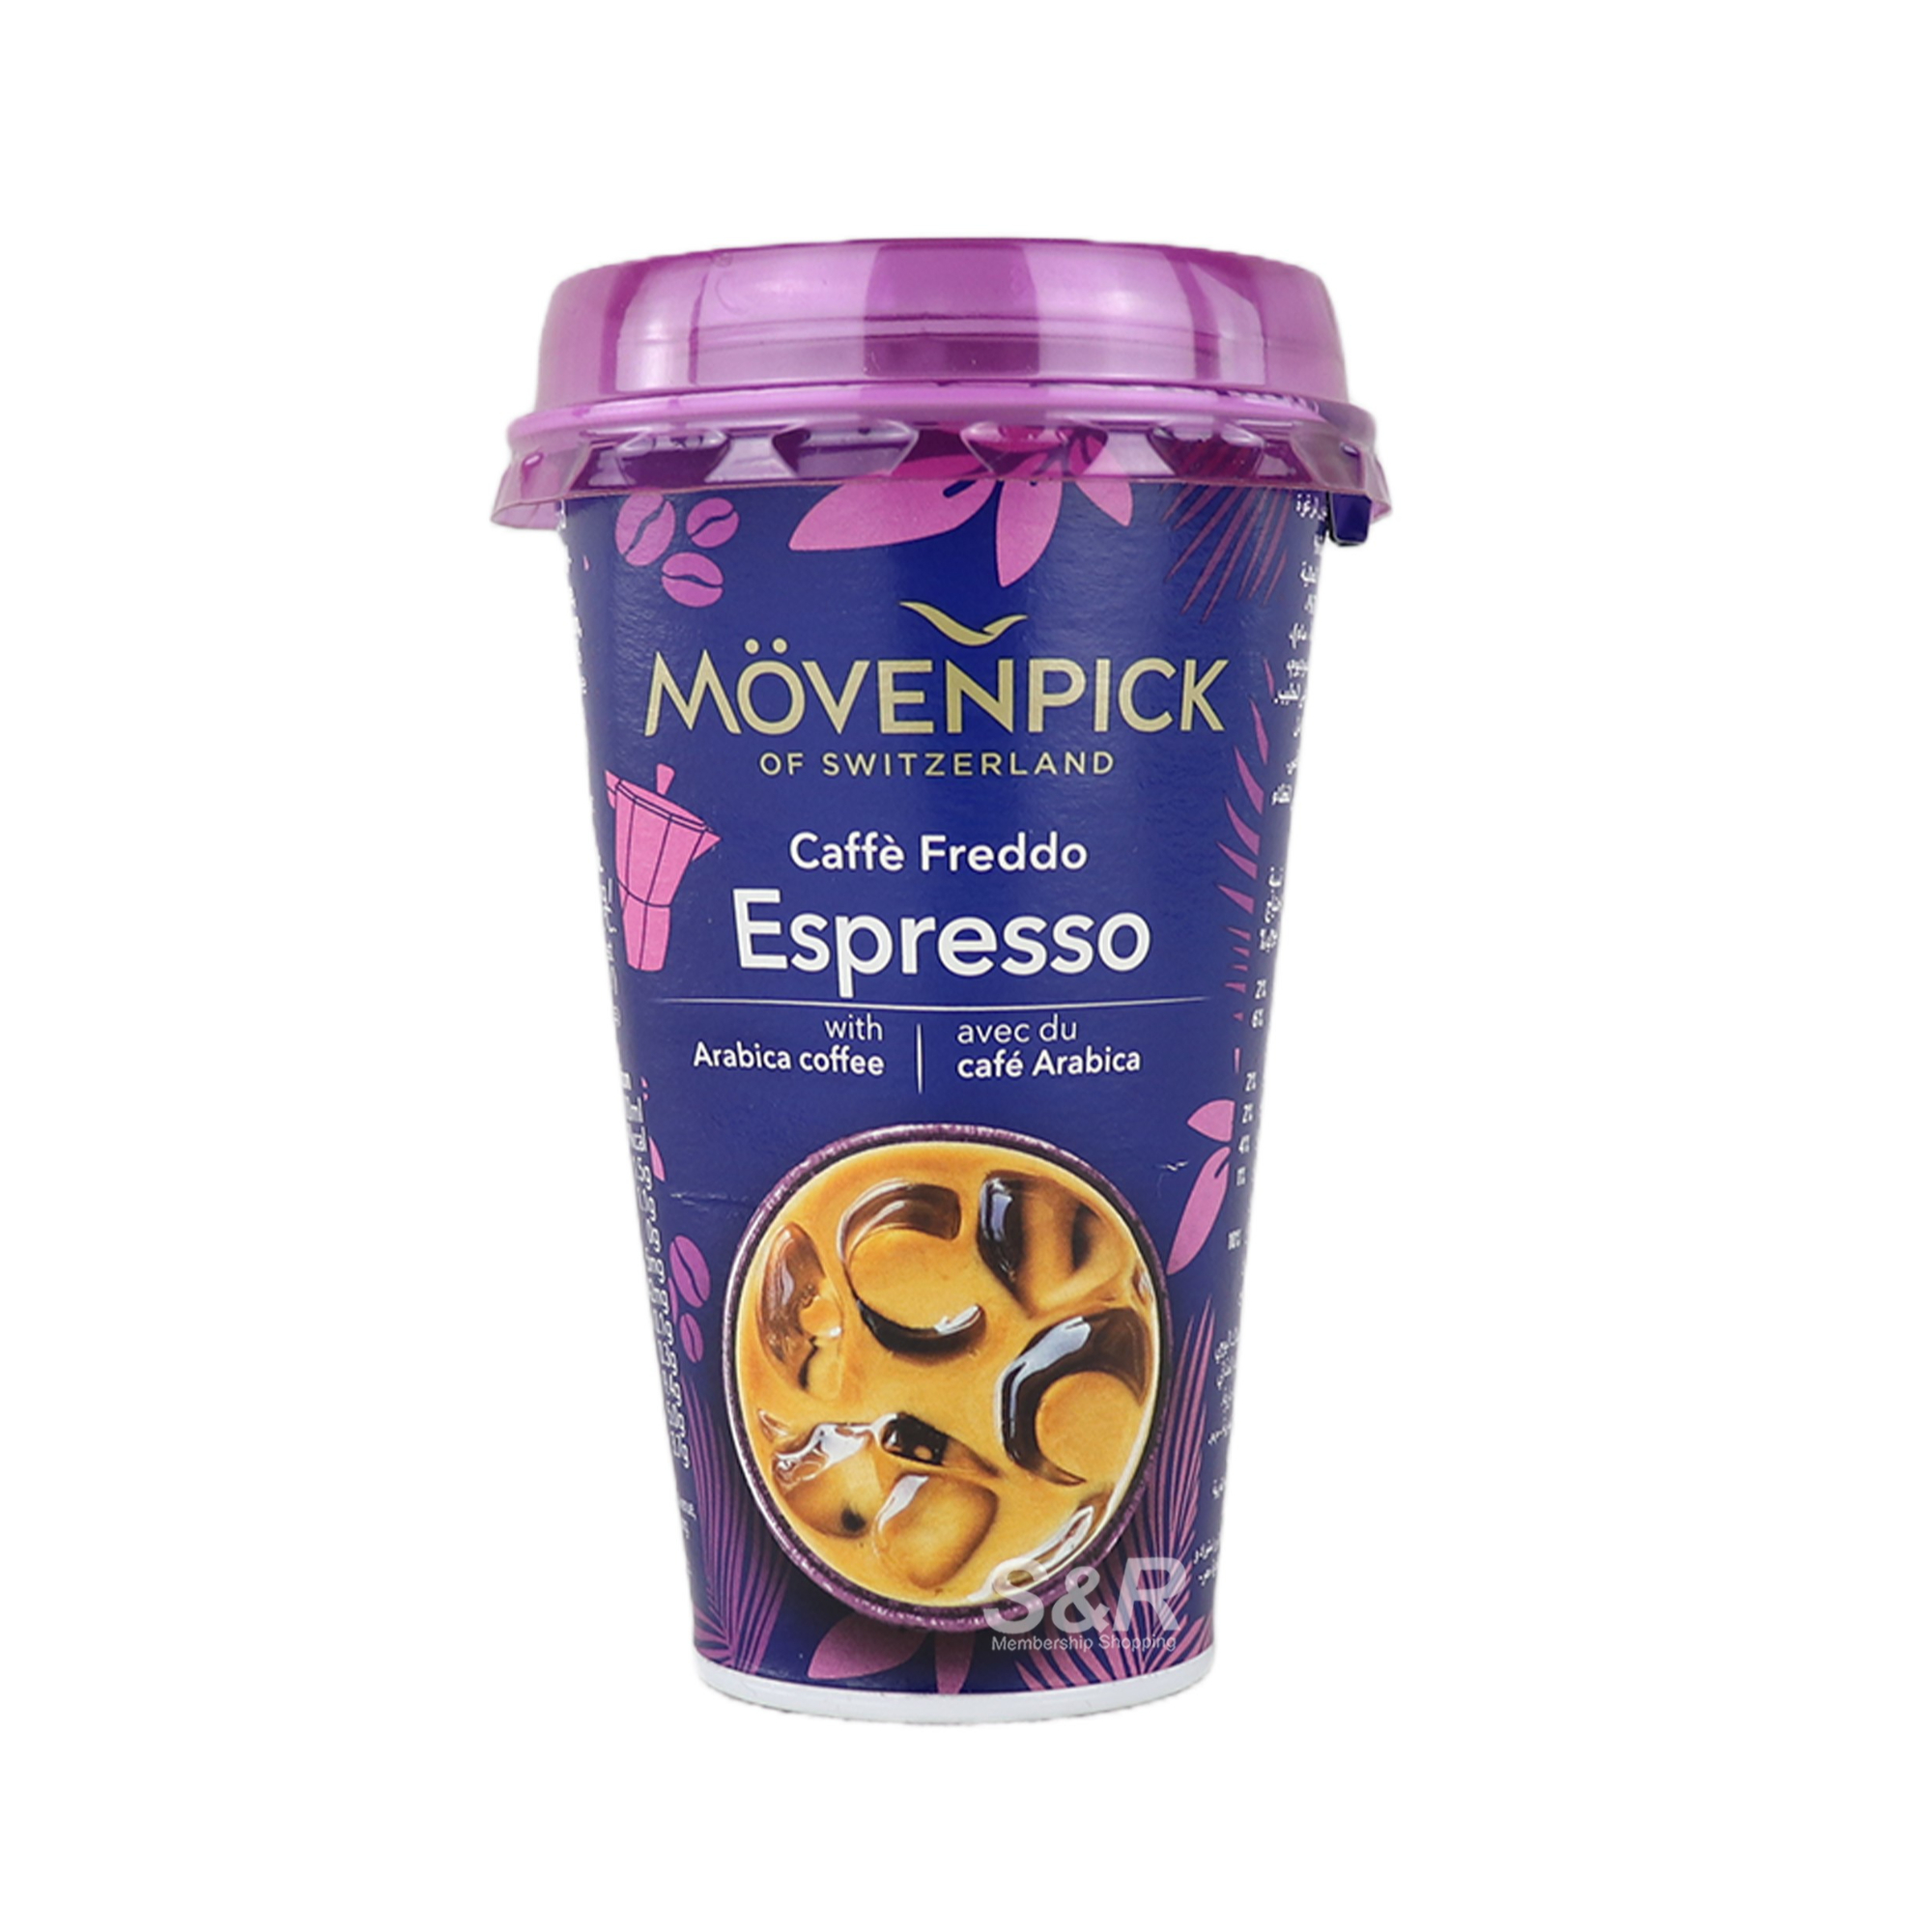 Movenpick Caffe Freddo Espresso Coffee 200mL